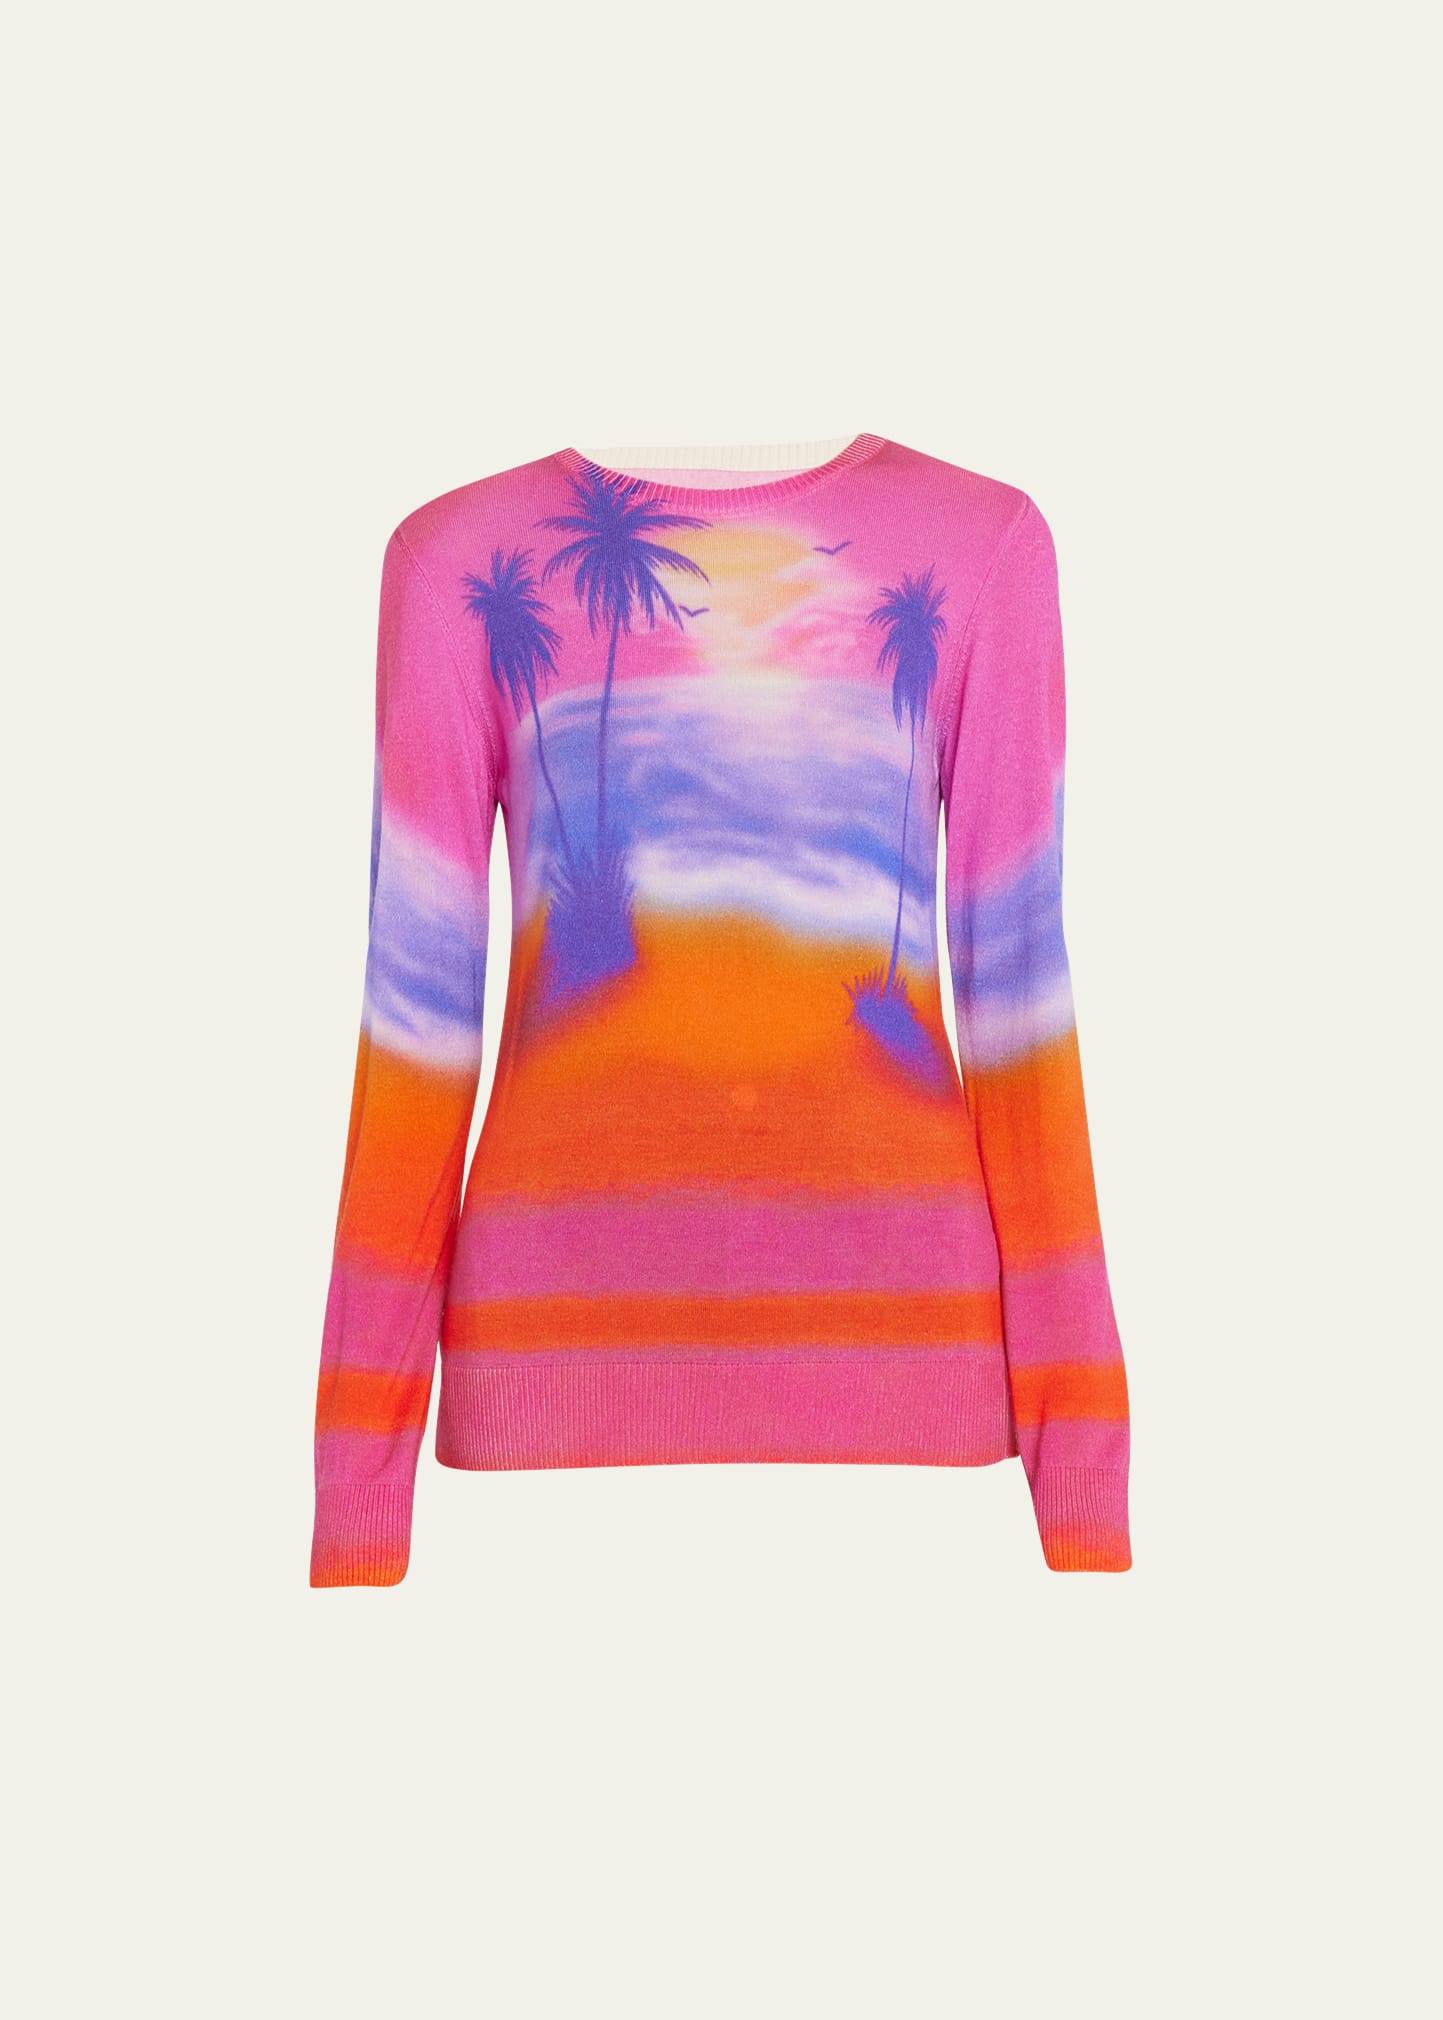 Sunset Print Jersey Knit Sweater